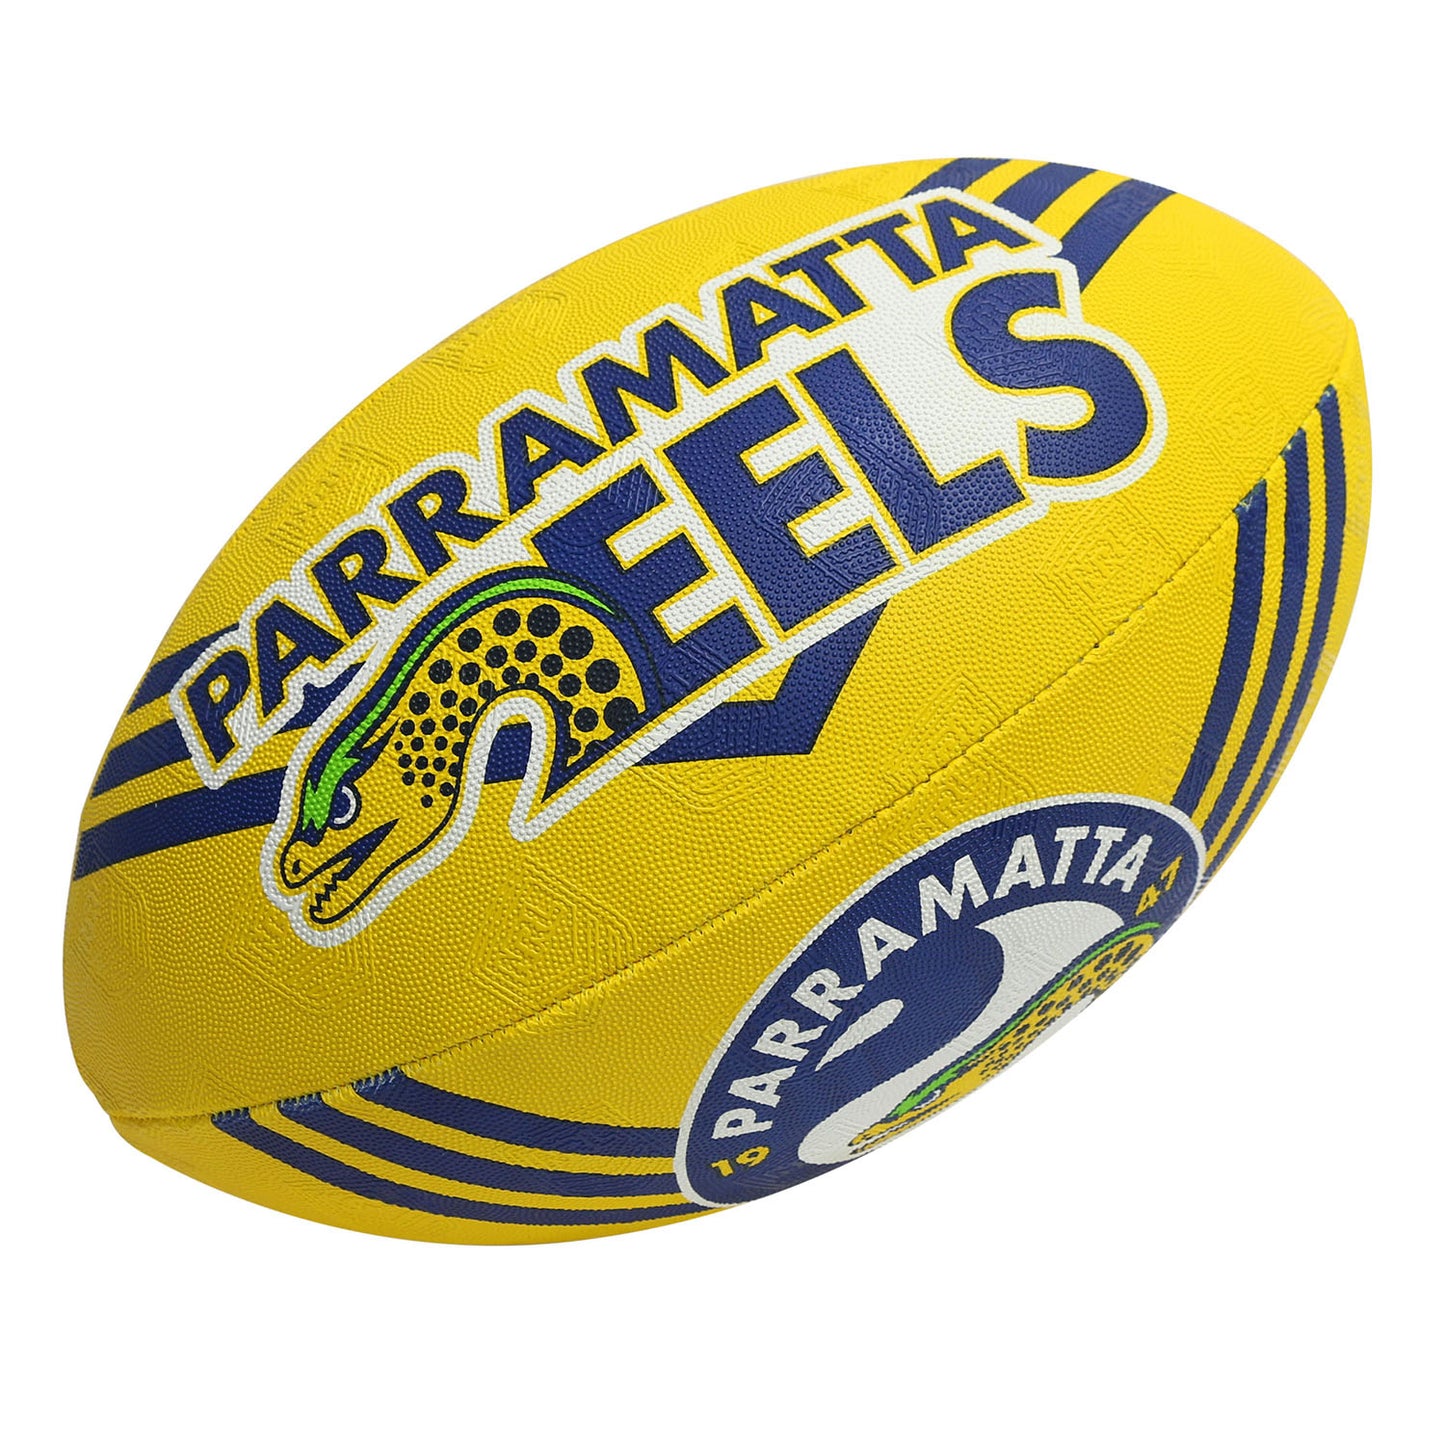 Parramatta Eels Supporter Ball